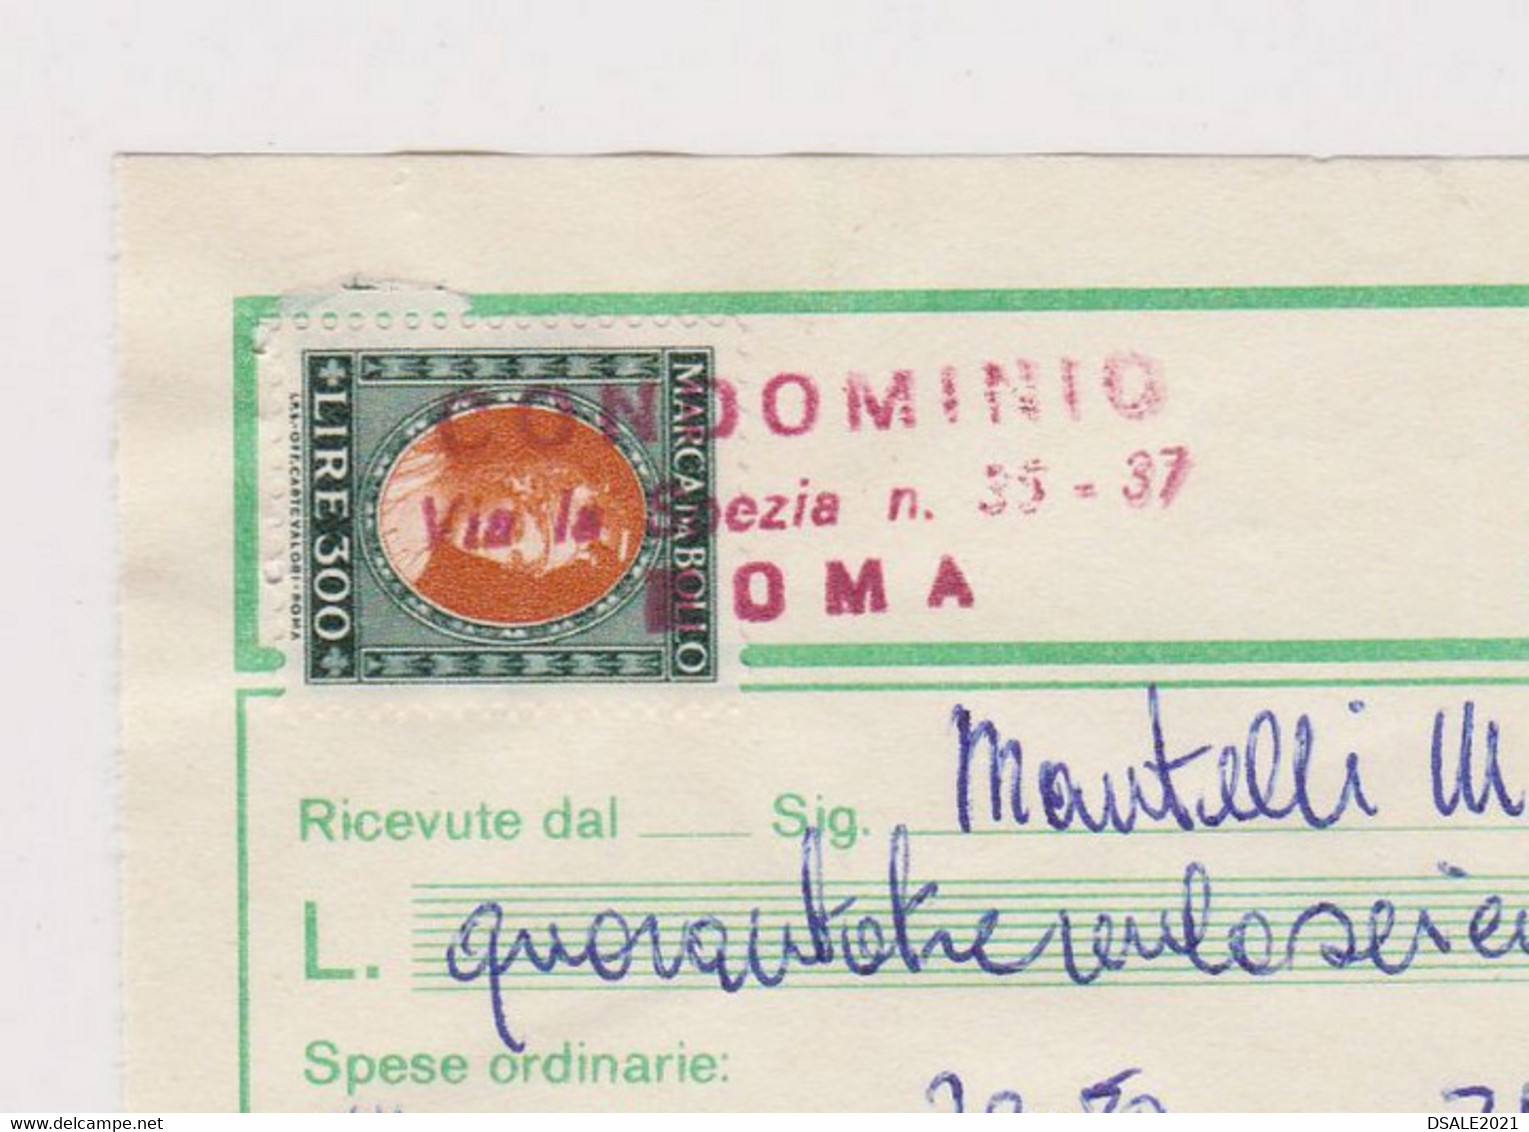 Italy Receipt Bill 1979 Italian 300Lire Marca Da Bollo, Revenue Fiscal Stamps, Ricevute Di Condominio (39505) - Fiscaux